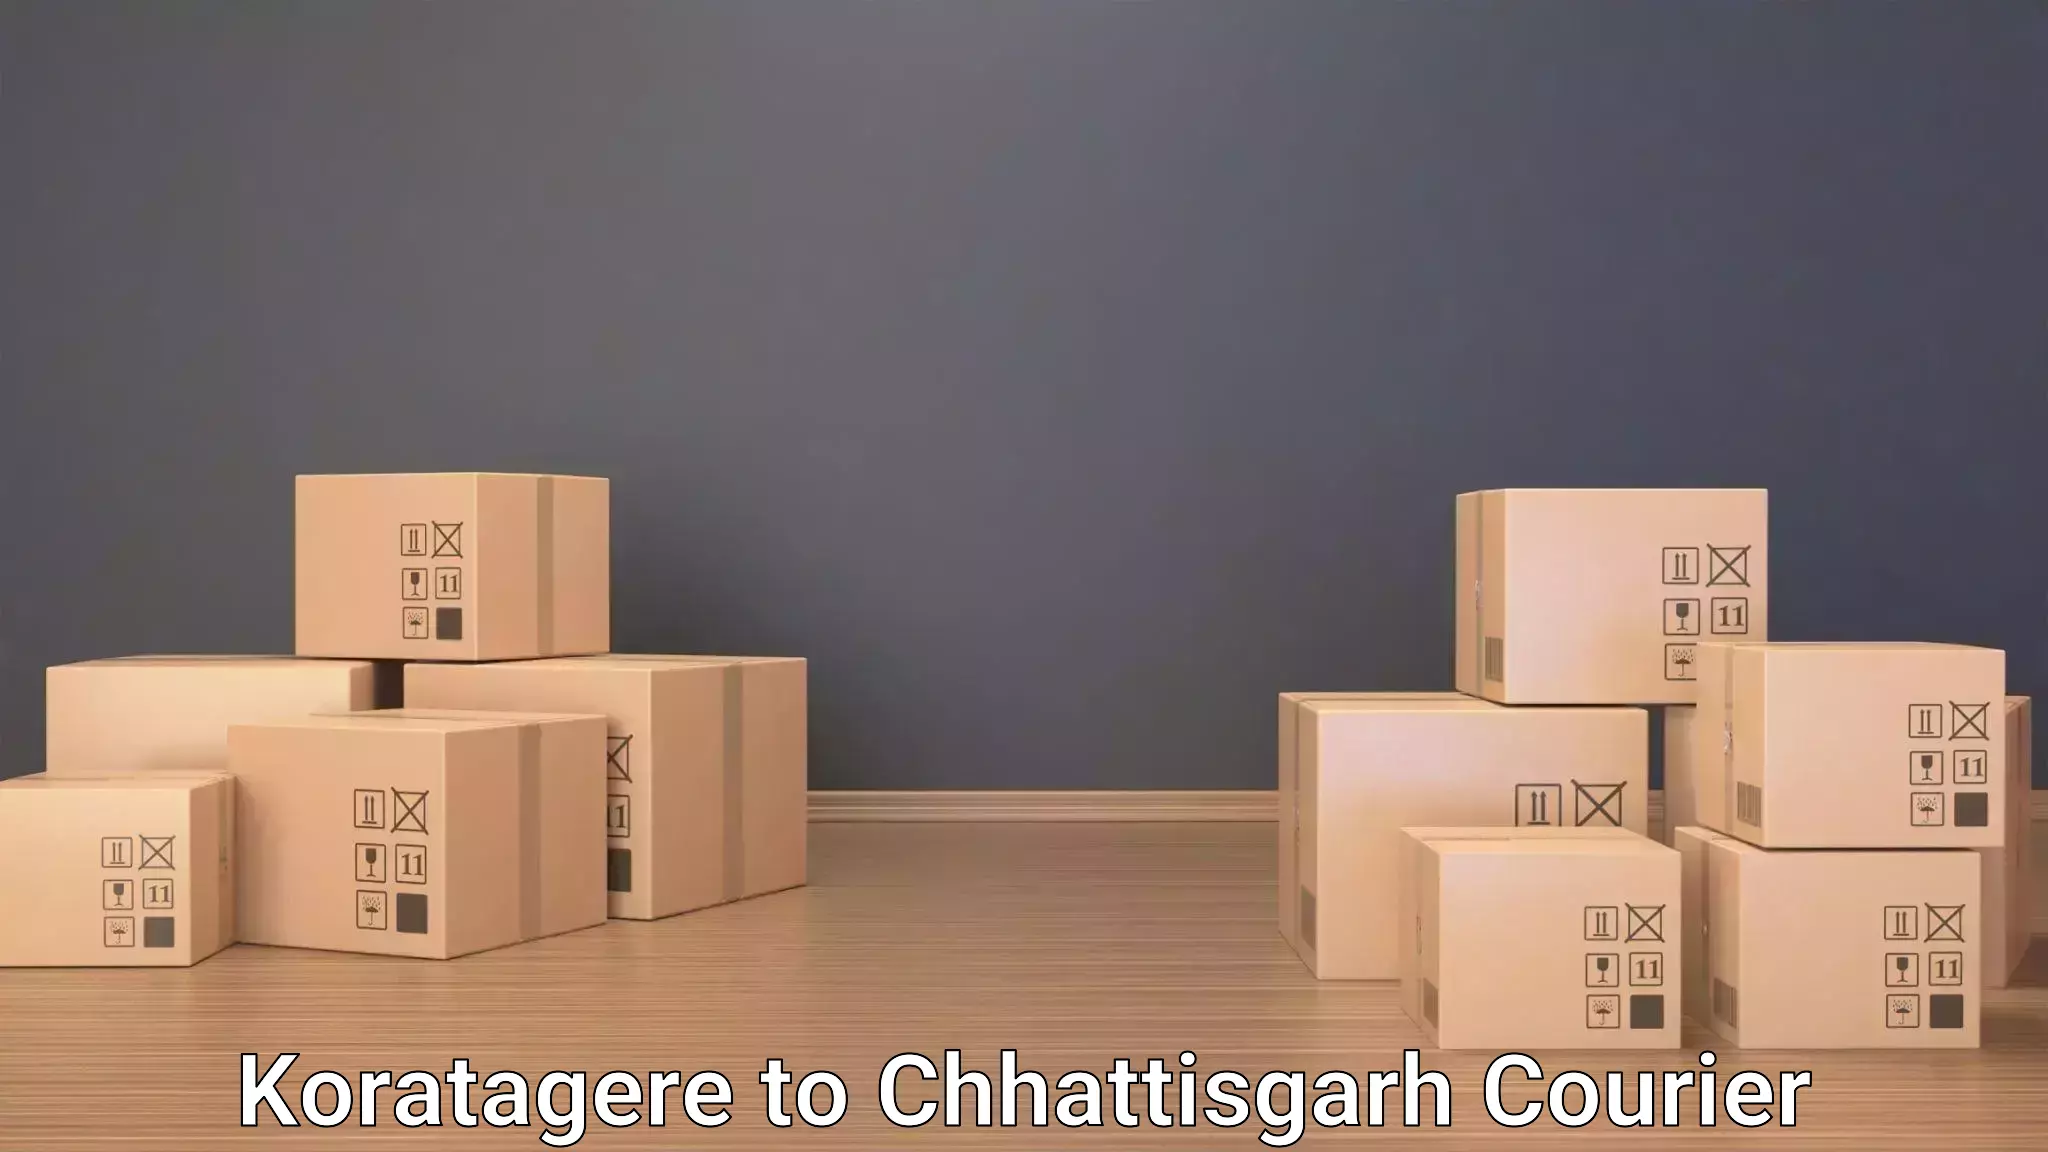 Luggage transit service Koratagere to Chhattisgarh